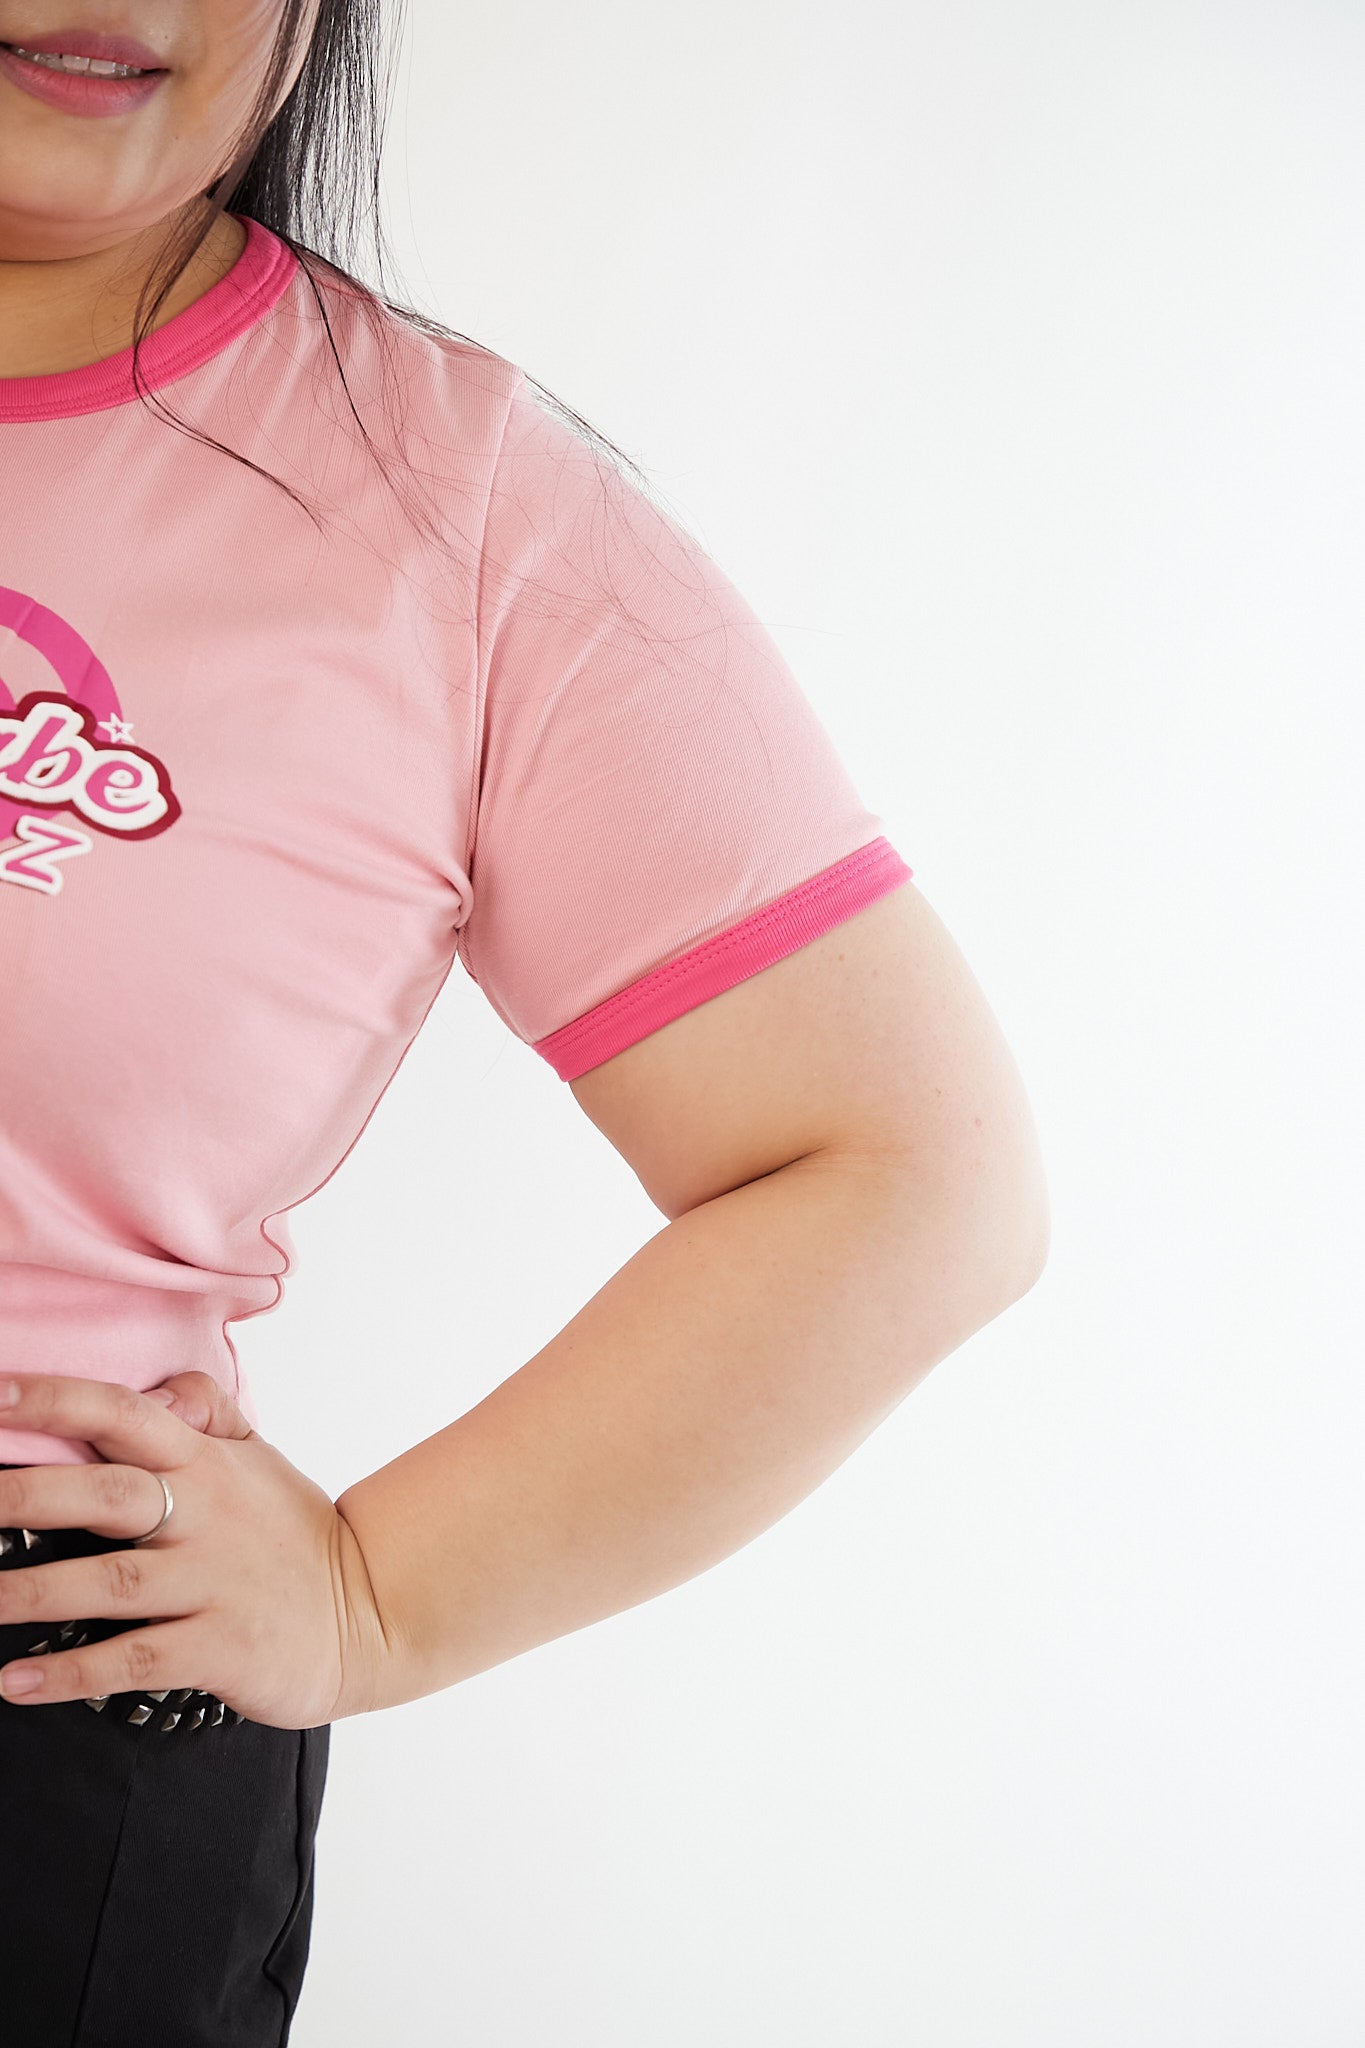 粉紅色心心圖案爆乳薄身短裝T恤